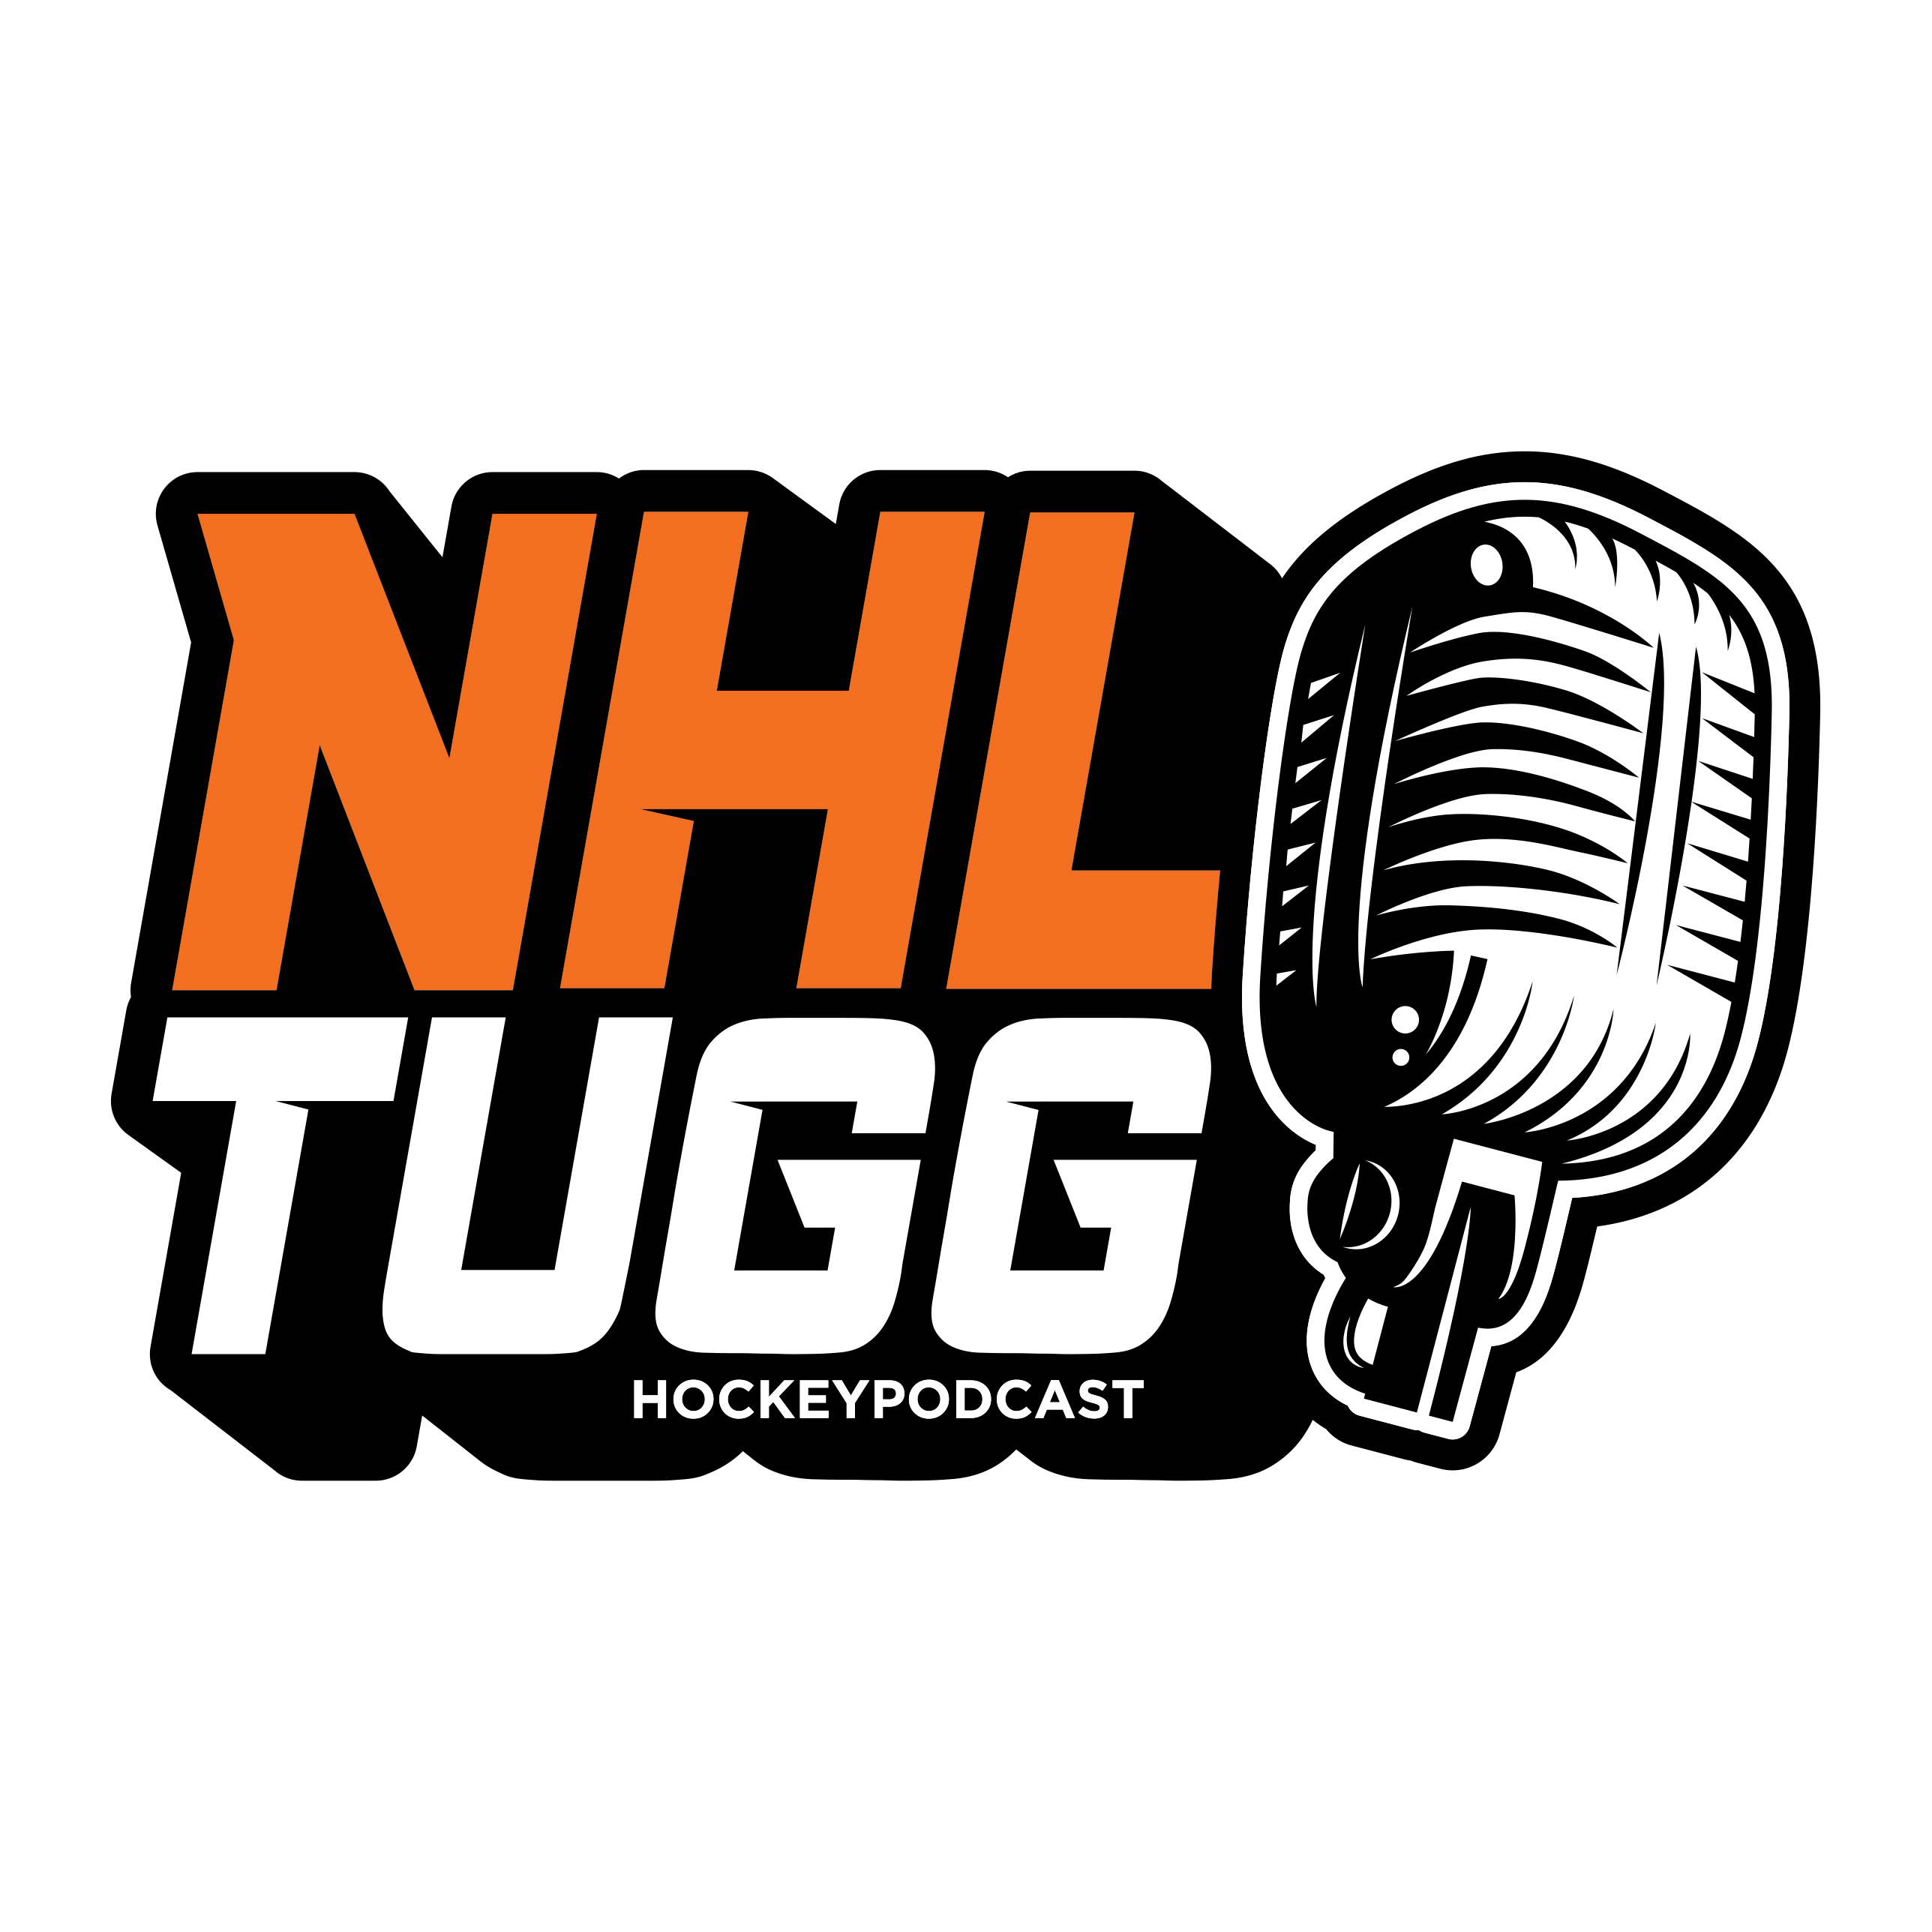 NHL-Tugg avsnitt 103 “Draft och Free Agency Western Conference”